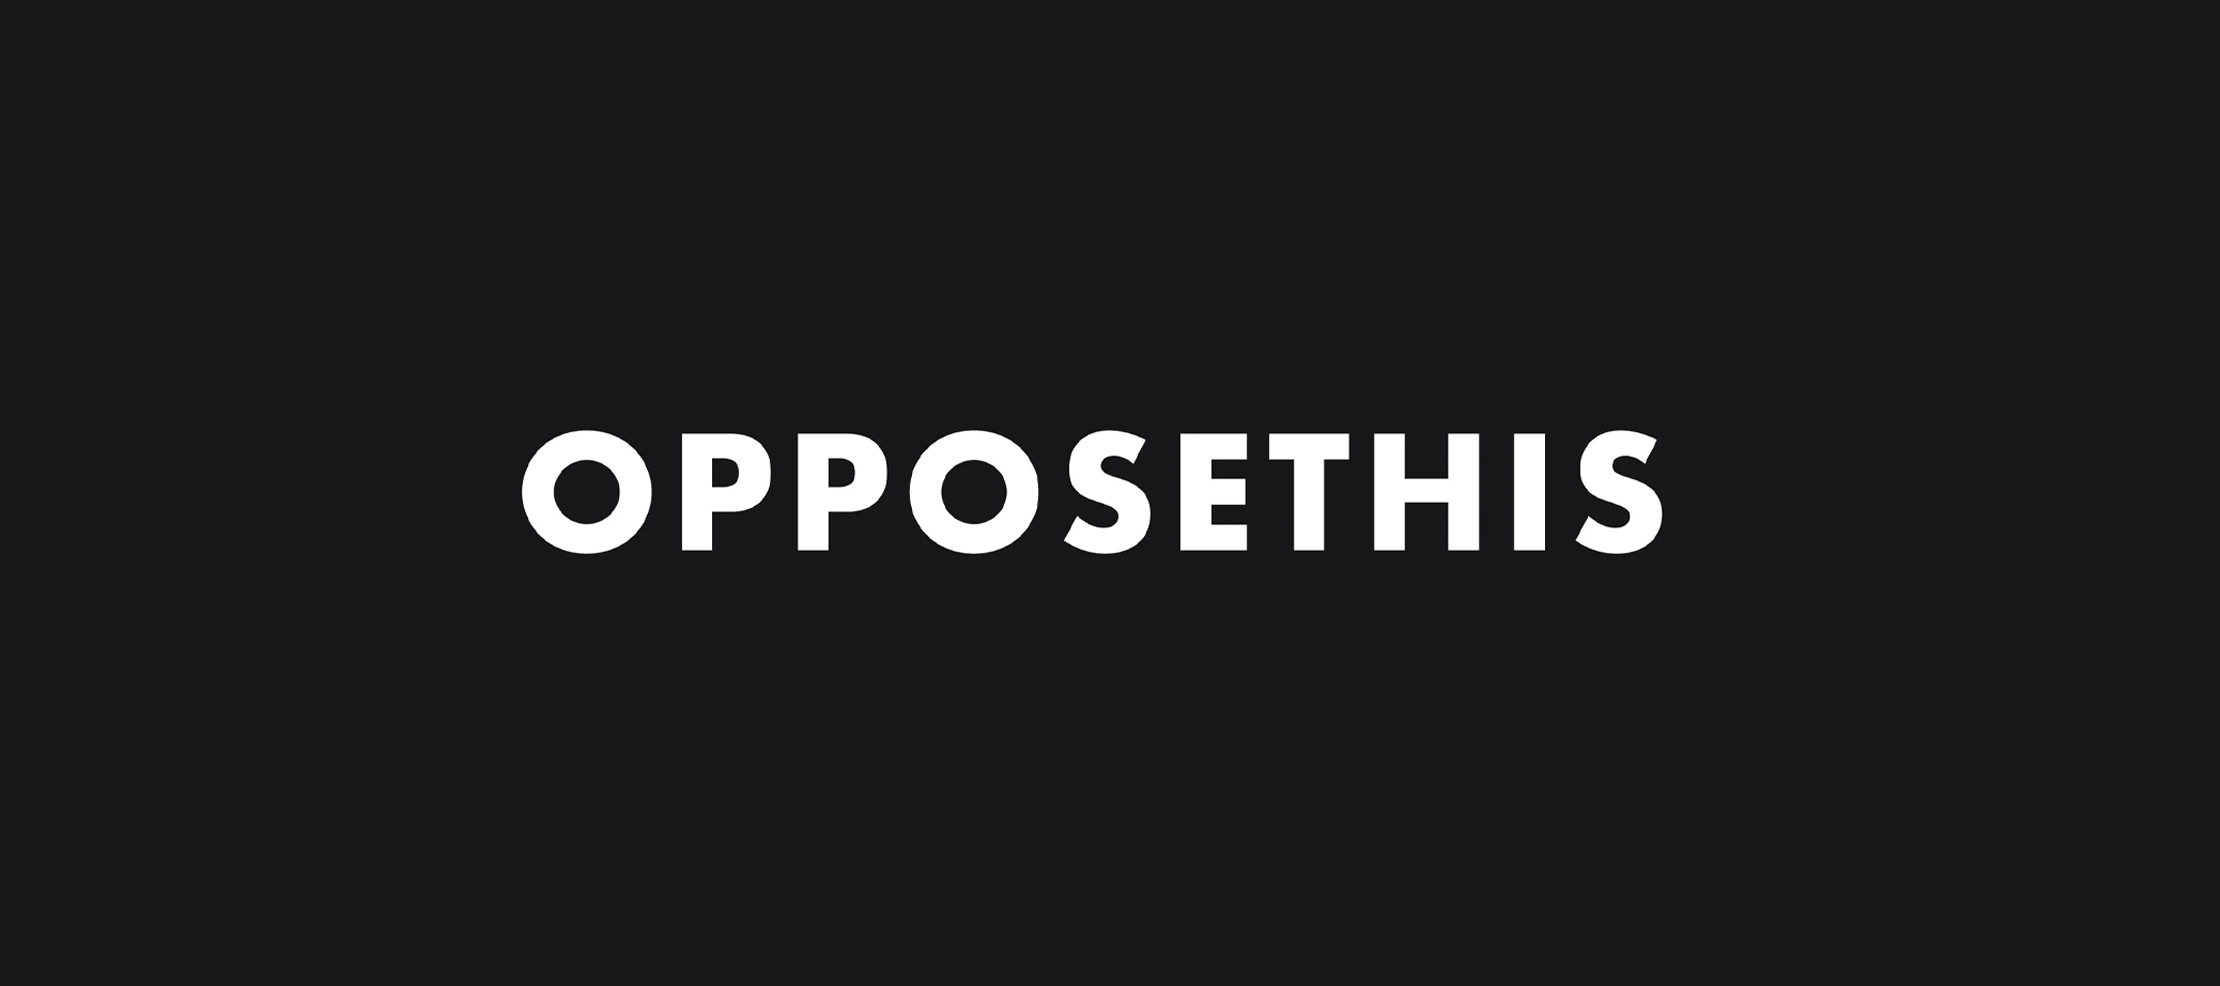 OPPOSETHIS Logo